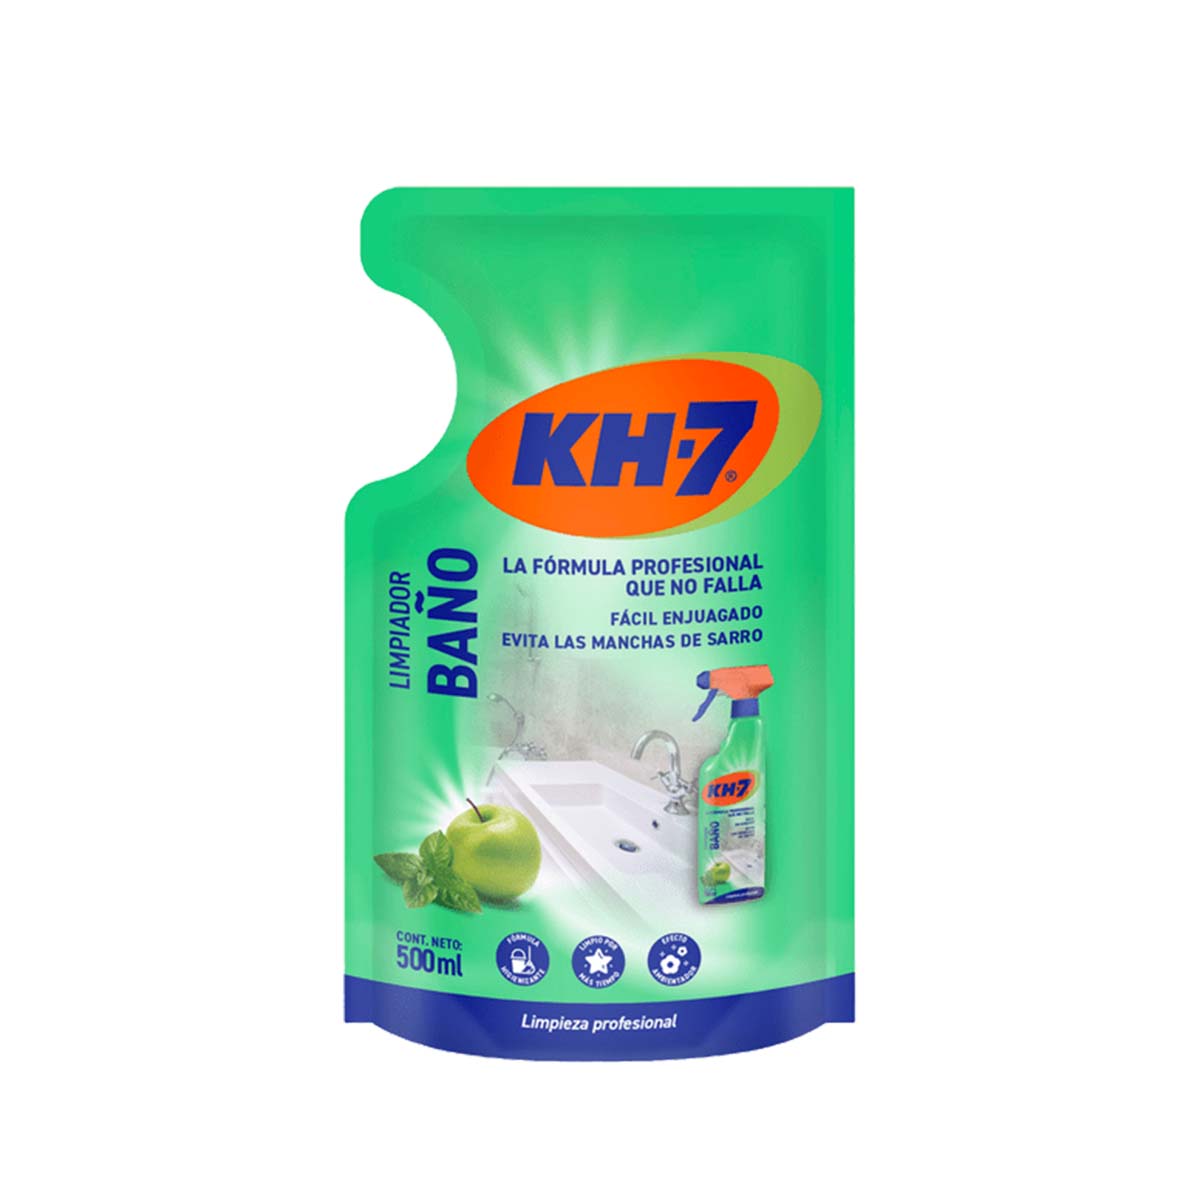 KH-7 Limpiador Baños Desinfectante, Previene la cal, el moho, y